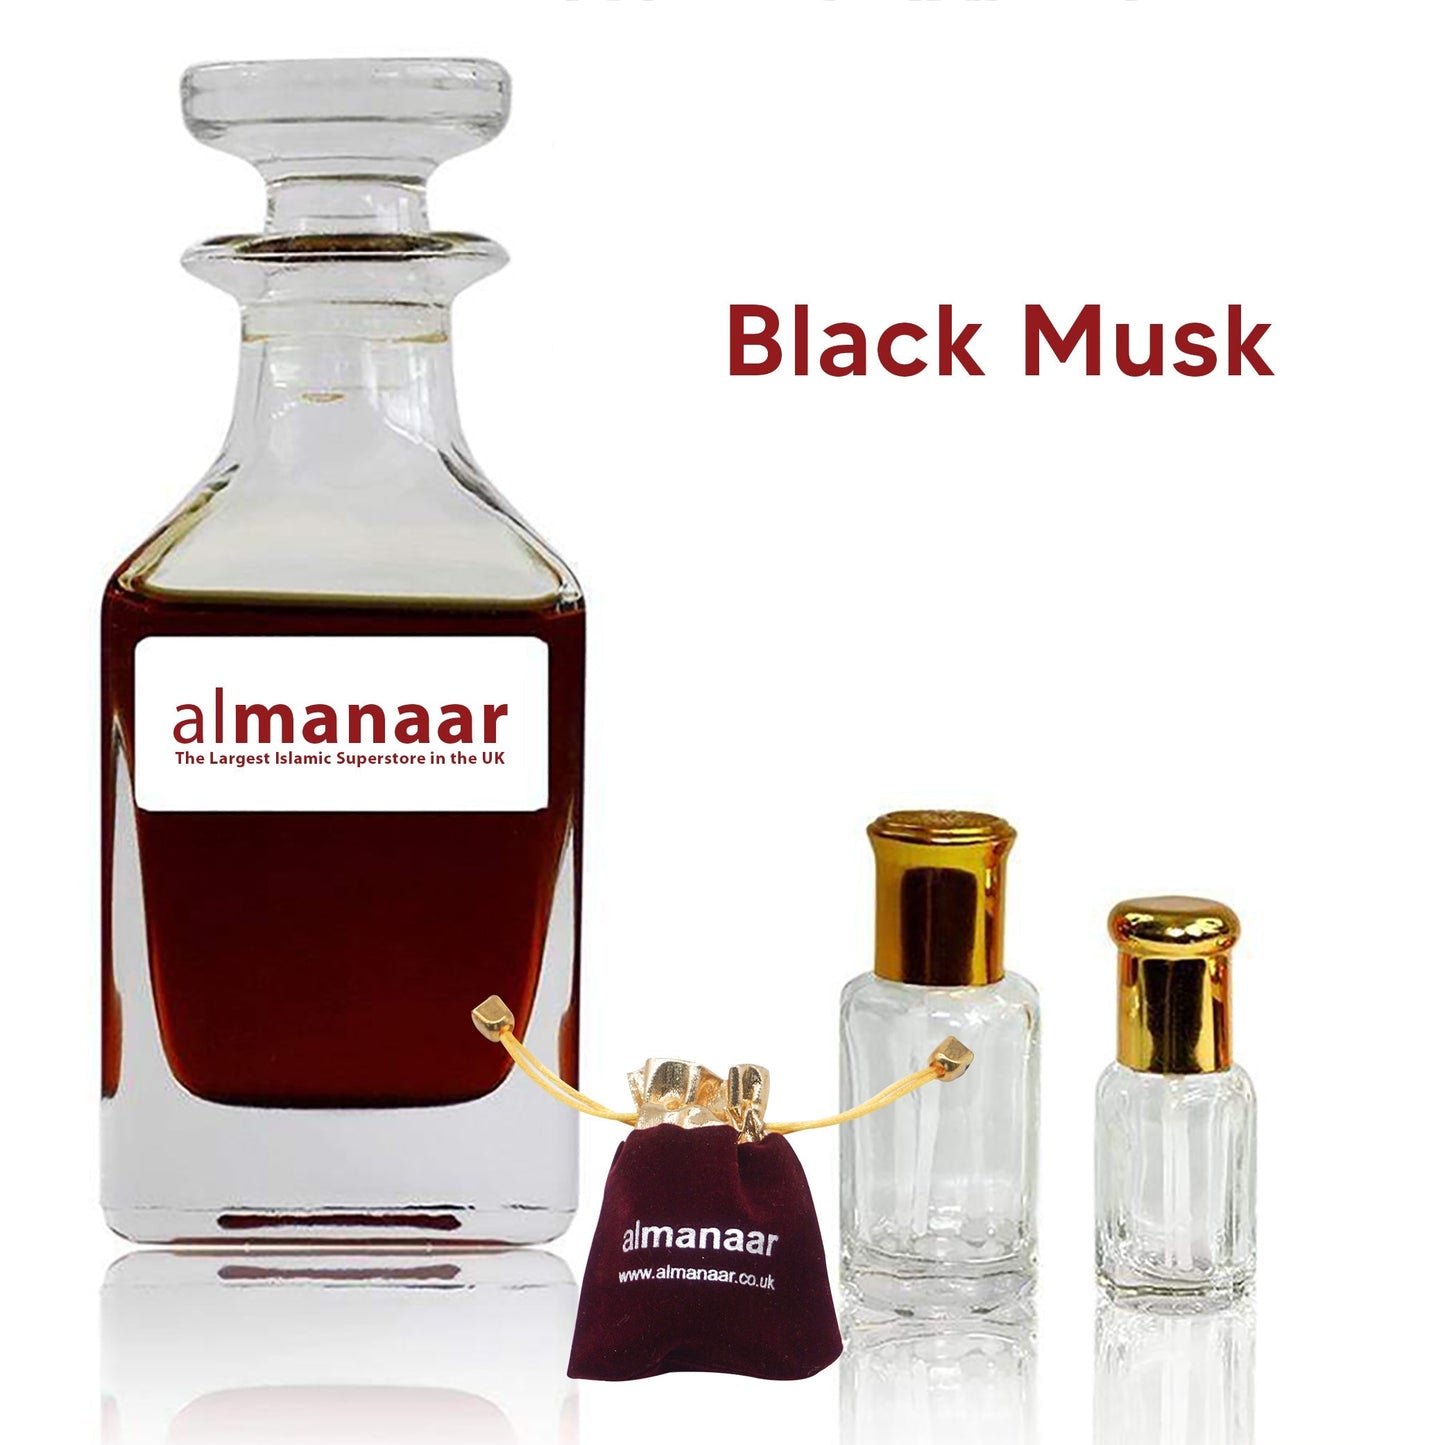 Black Musk - Concentrated Perfume Oil by almanaar-almanaar Islamic Store